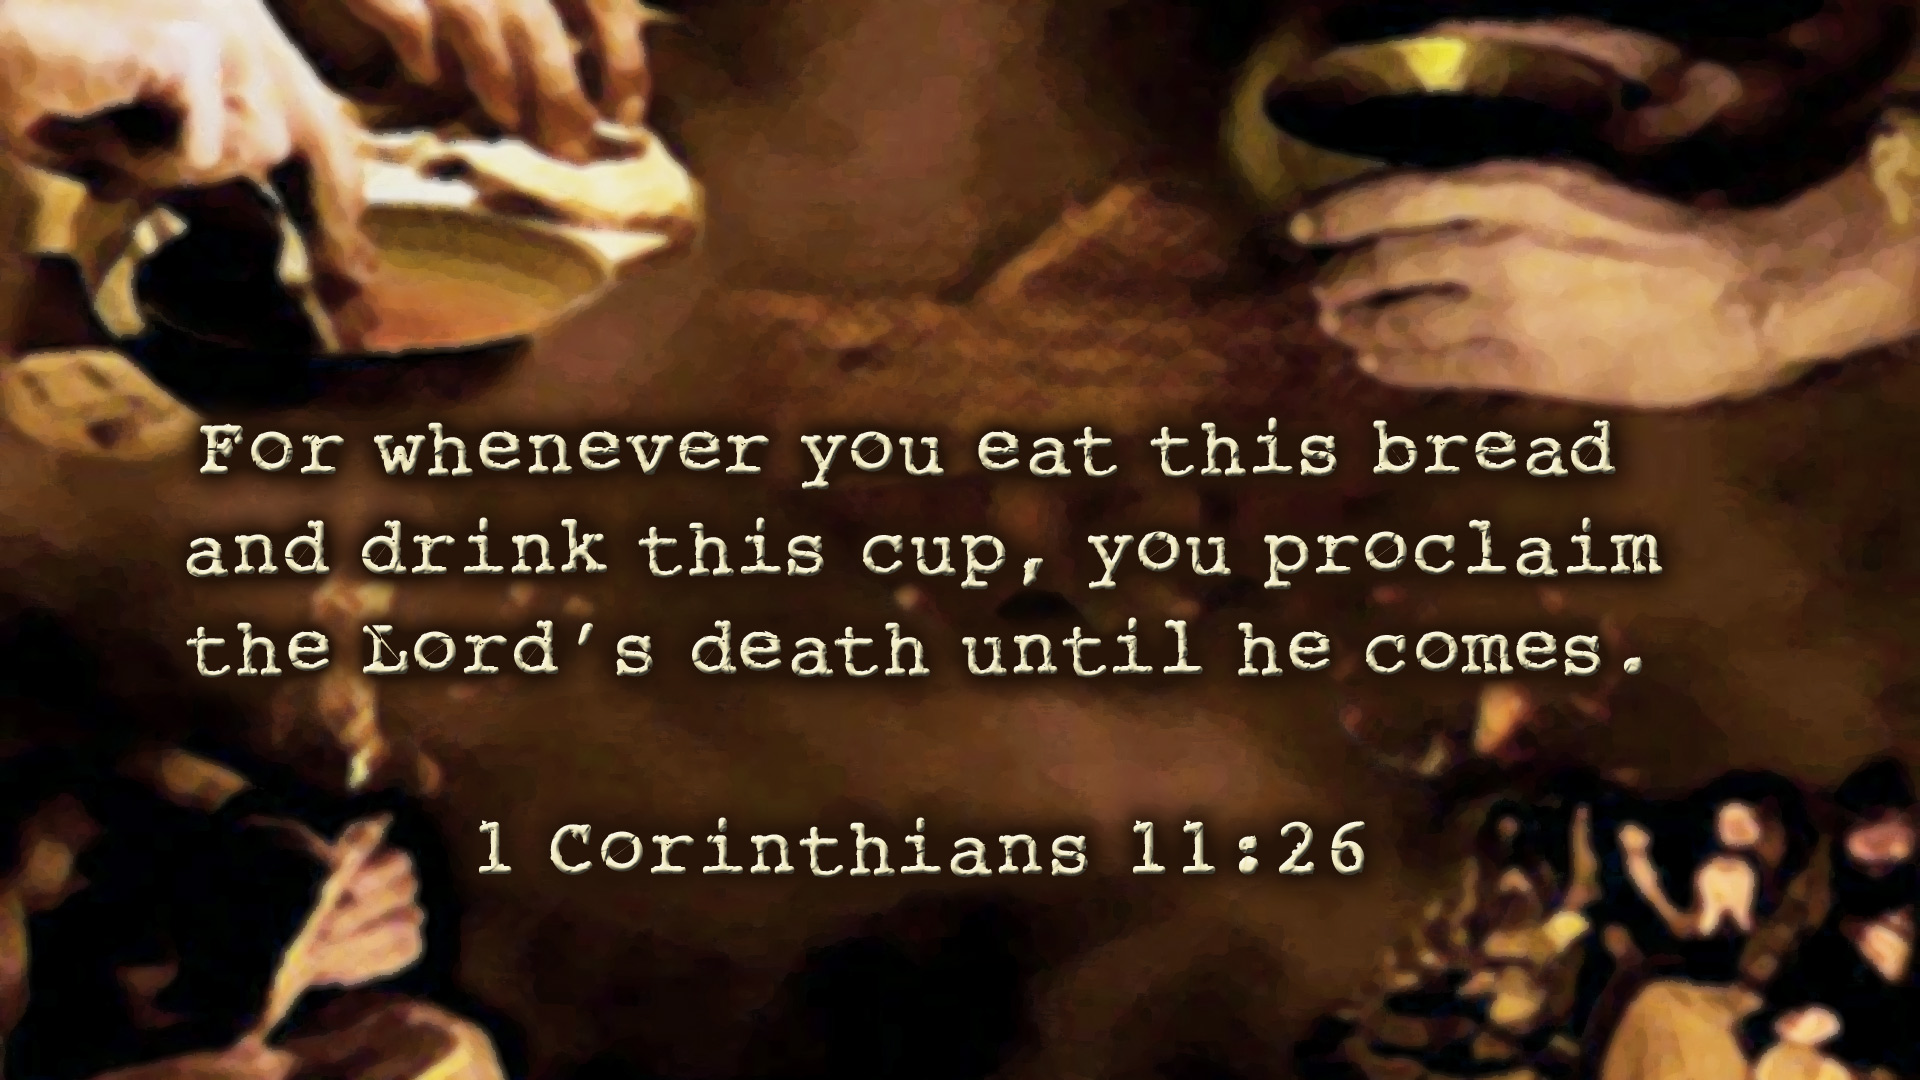 1 Corinthian 11:26 gợi nhắc nhở về truyền thống kỷ niệm bàn tiệc của Thánh Giêng, để tưởng nhớ mãi mãi về sự hy sinh của Chúa Giê Su trong bữa ăn cuối cùng của Ngài.